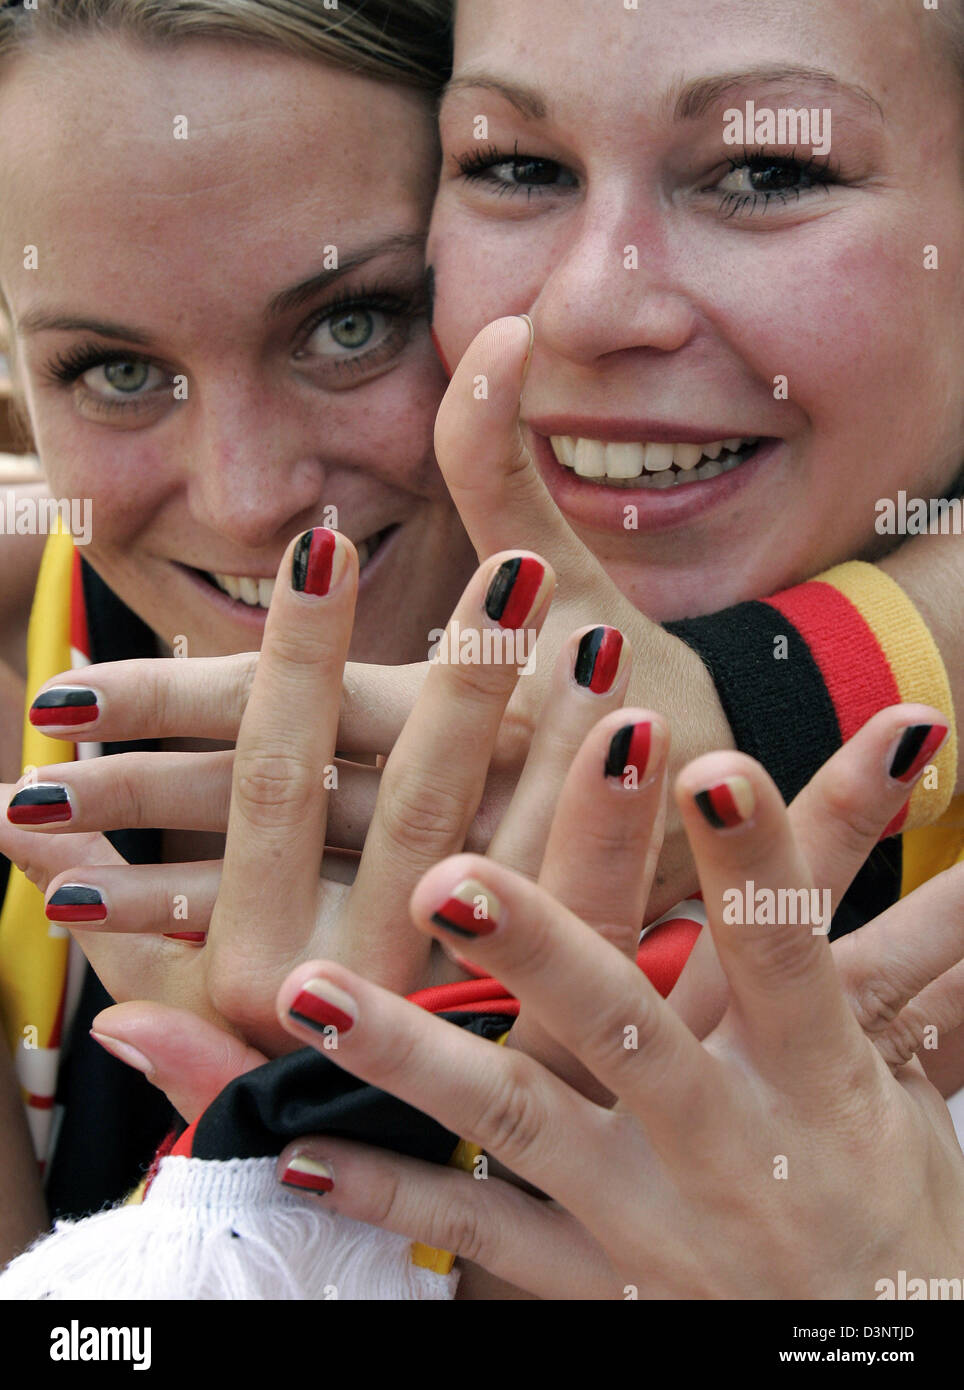 Heidi (L) und Rike, zwei deutsche Fußball-Fans zeigen ihre ...